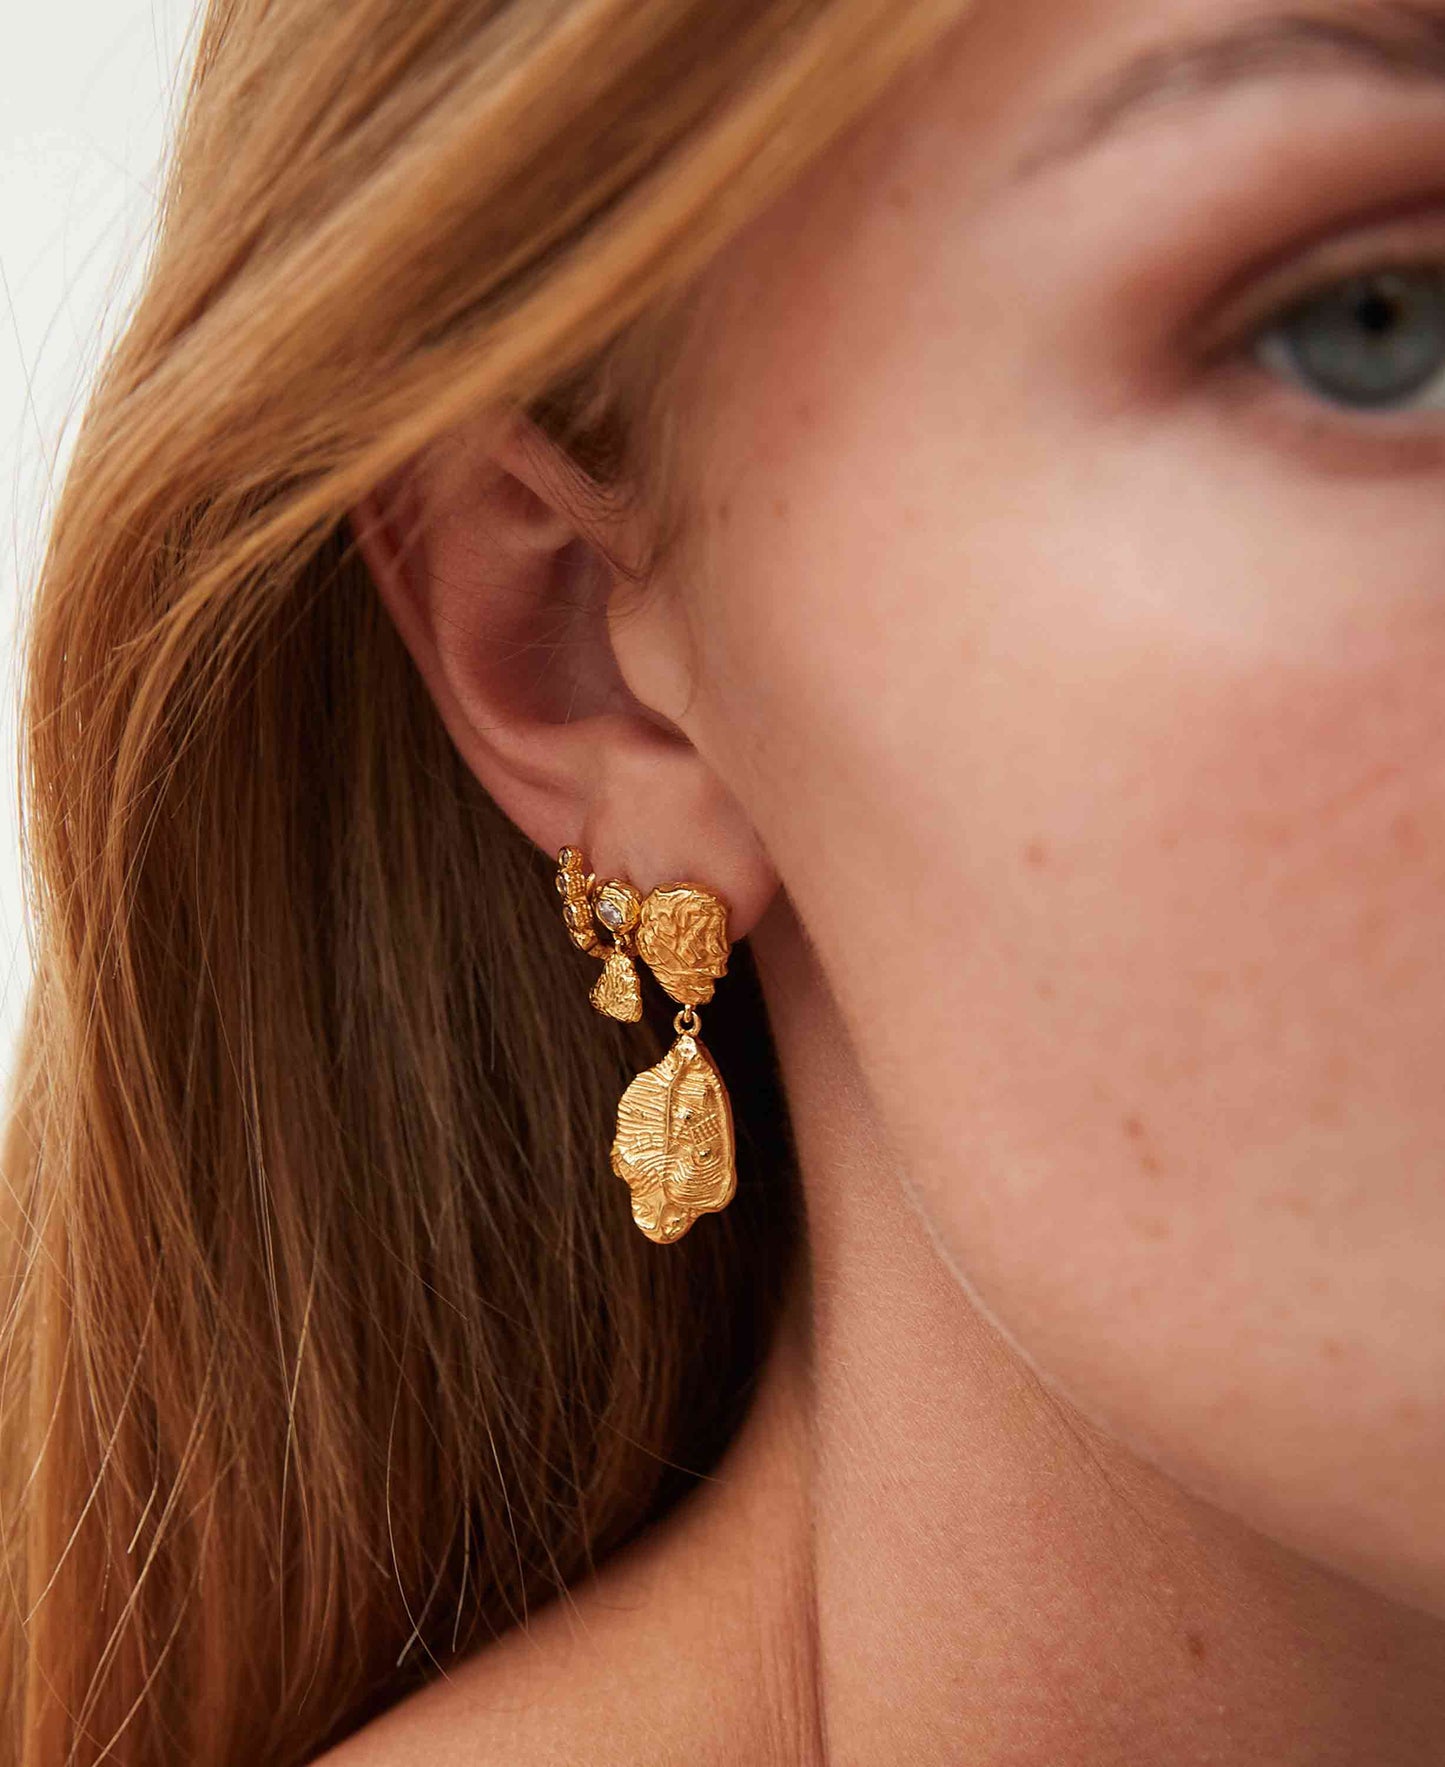 Lorelei grande earrings